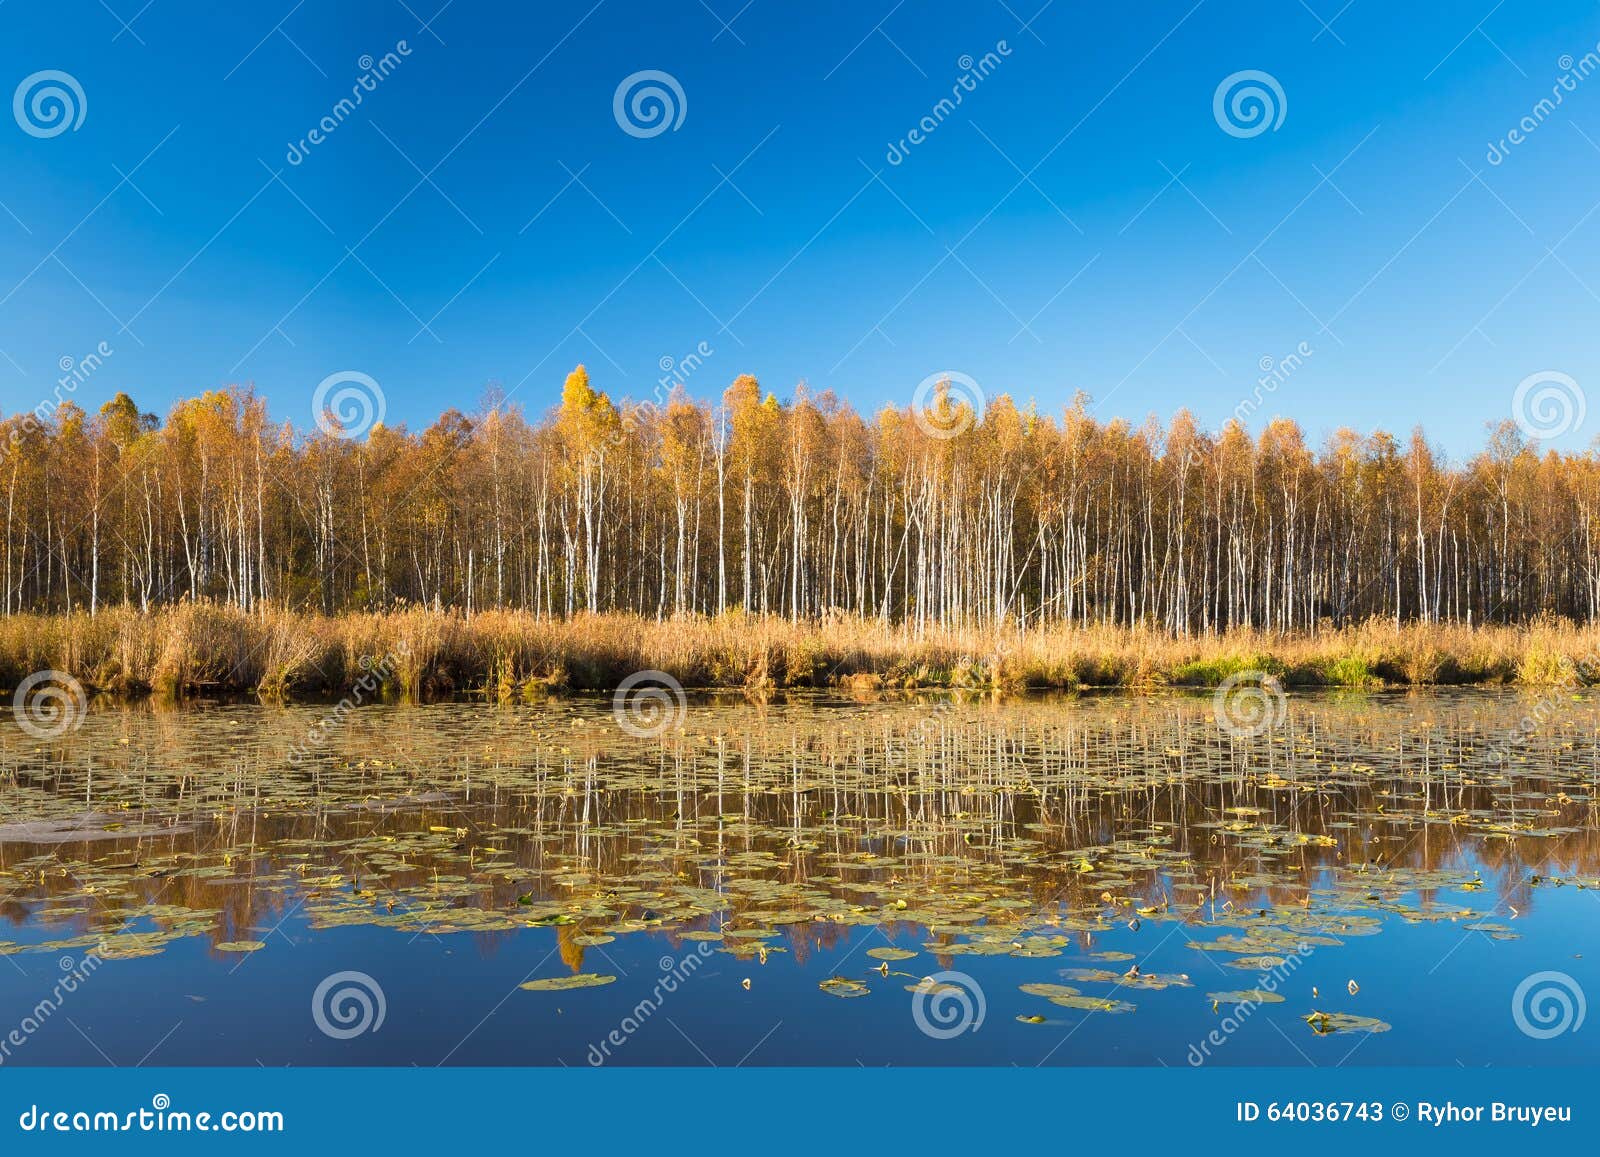 美丽的桦树森林和池塘在秋天晒干